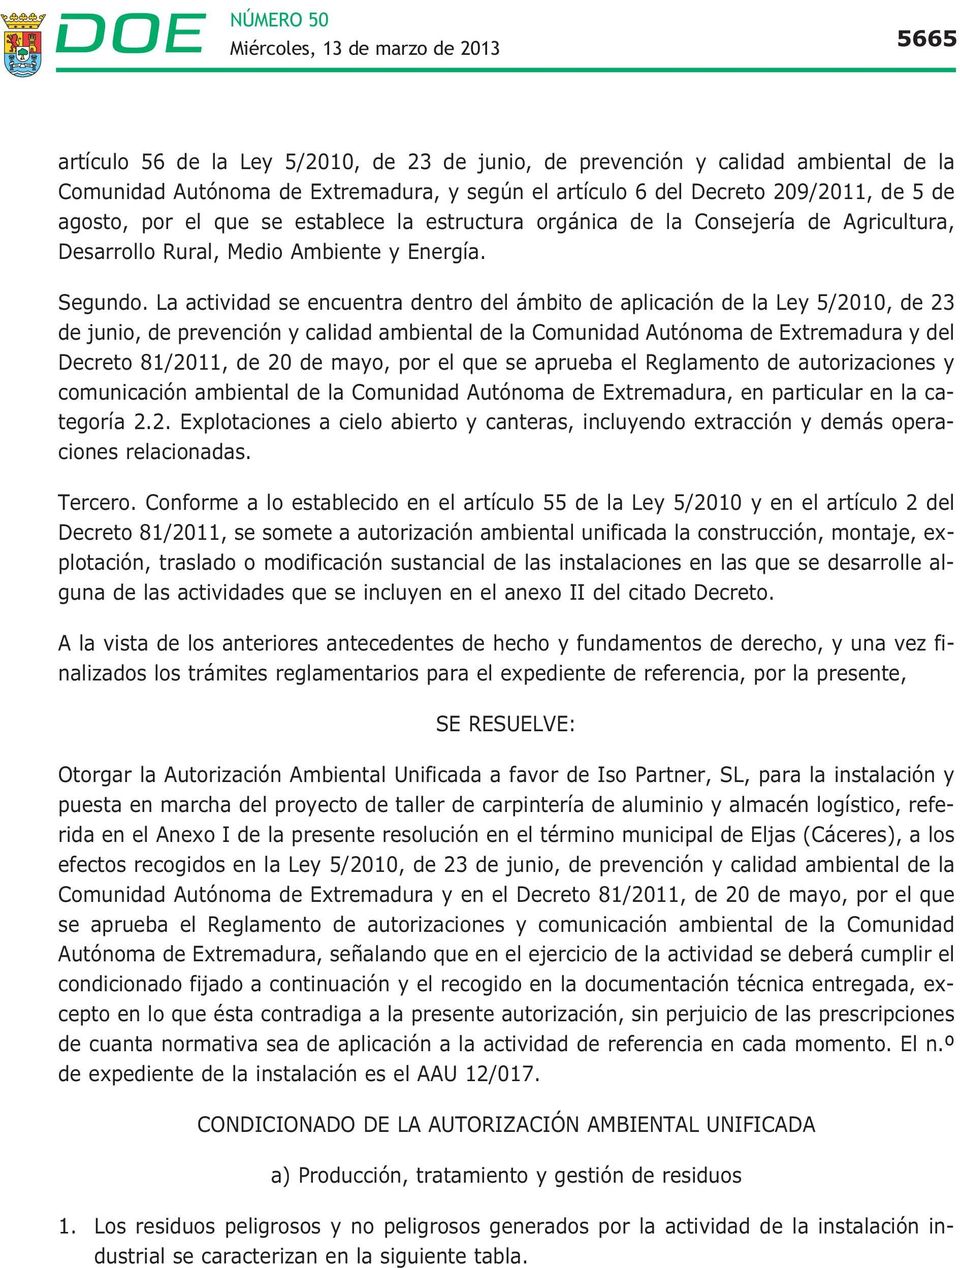 La actividad se encuentra dentro del ámbito de aplicación de la Ley 5/2010, de 23 de junio, de prevención y calidad ambiental de la Comunidad Autónoma de Extremadura y del Decreto 81/2011, de 20 de